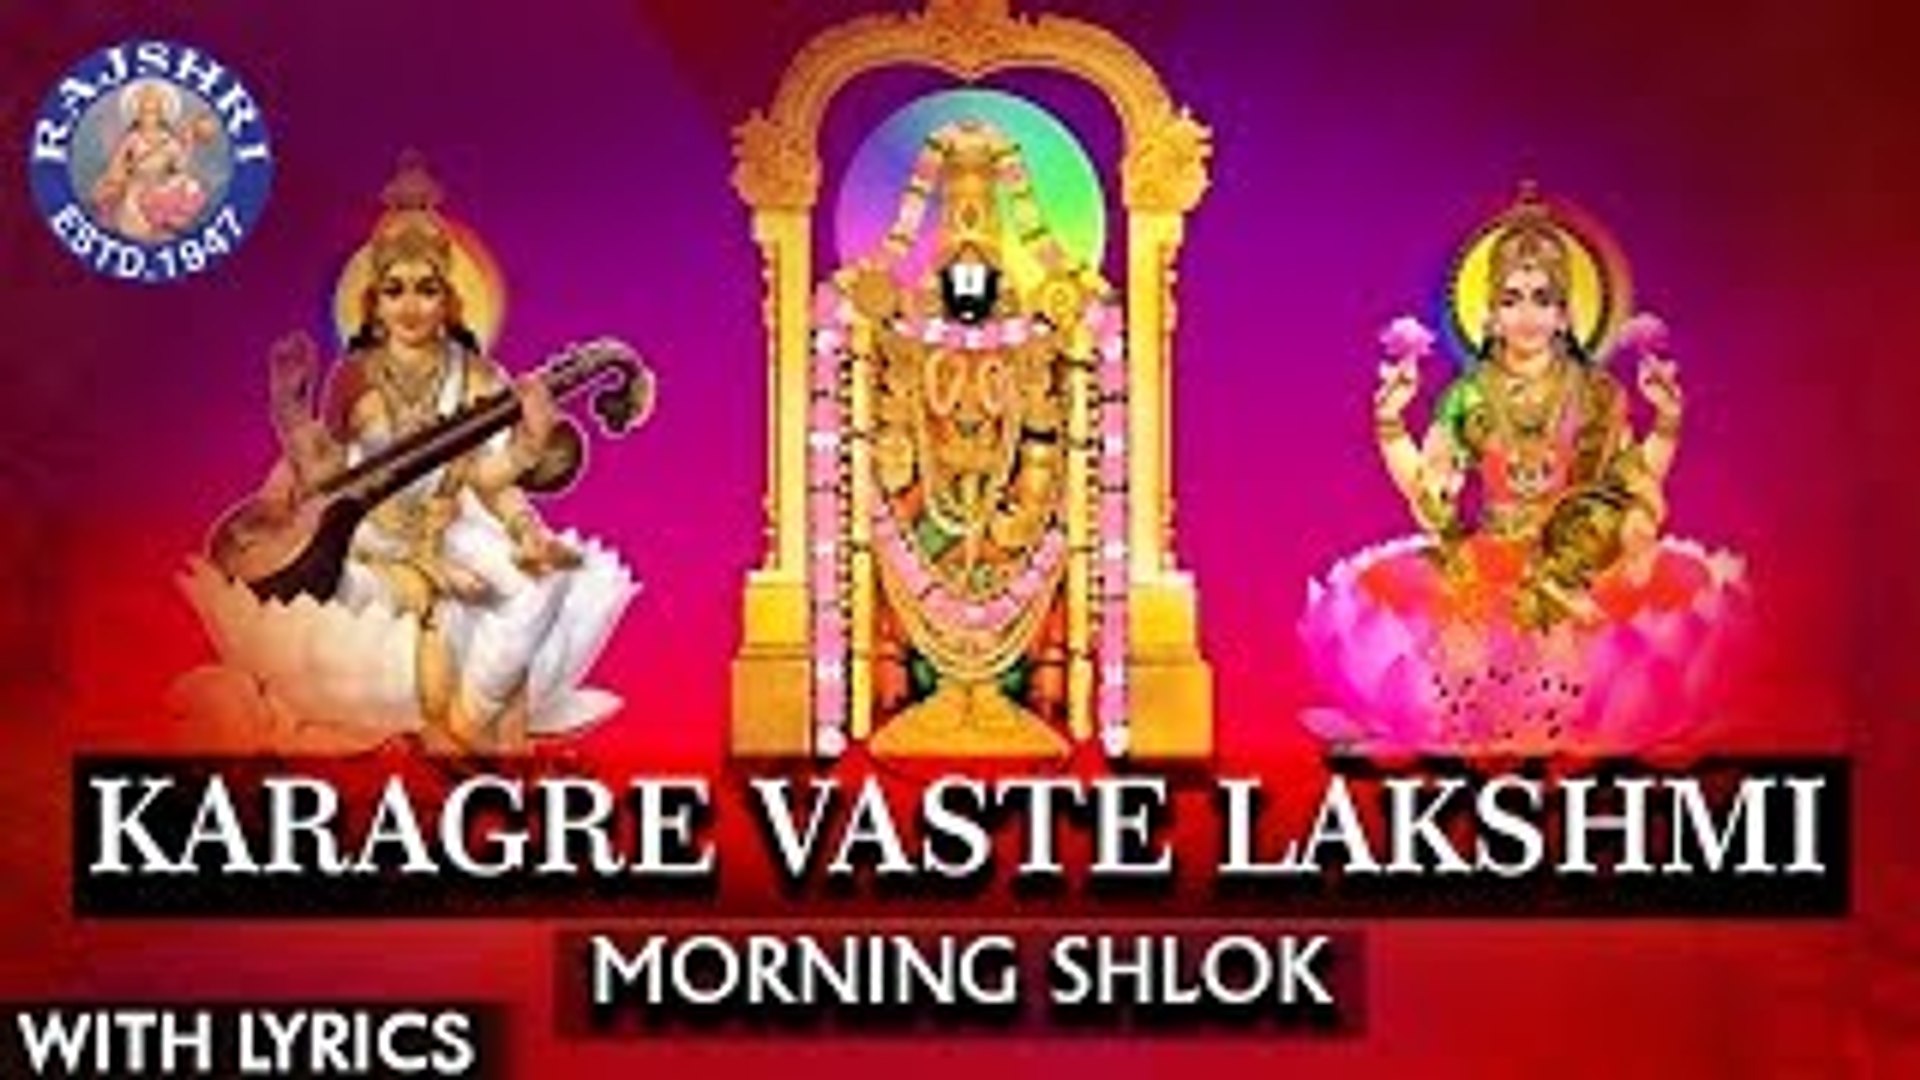 Karagre vasate lakshmi lyrics in english